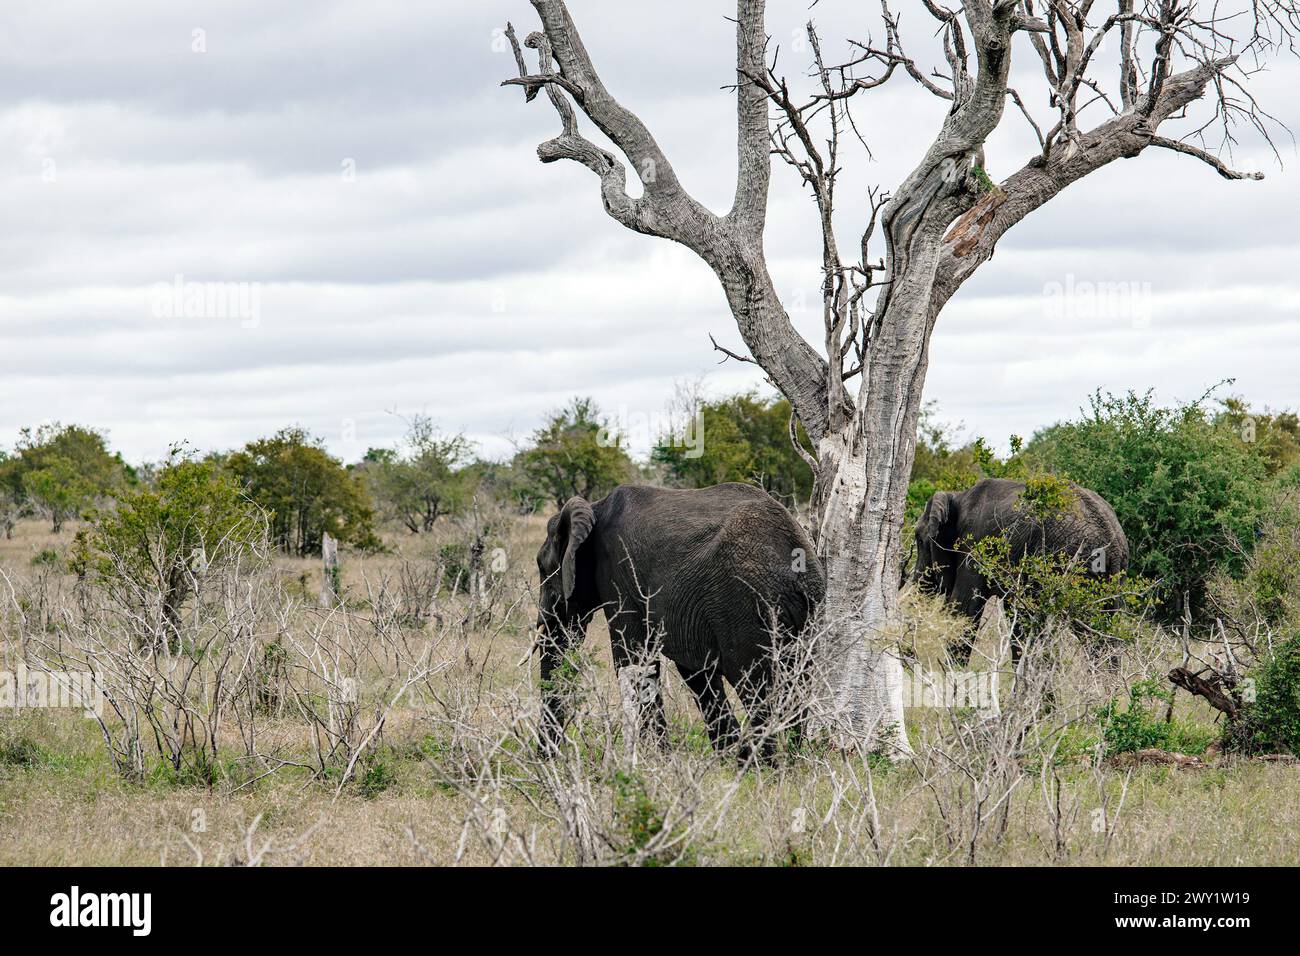 Deux éléphants d'Afrique marchent sur la savane, près de l'arbre séché. Safari dans le parc national Kruger, Afrique du Sud. Animaux de la faune de fond, nature sauvage Banque D'Images